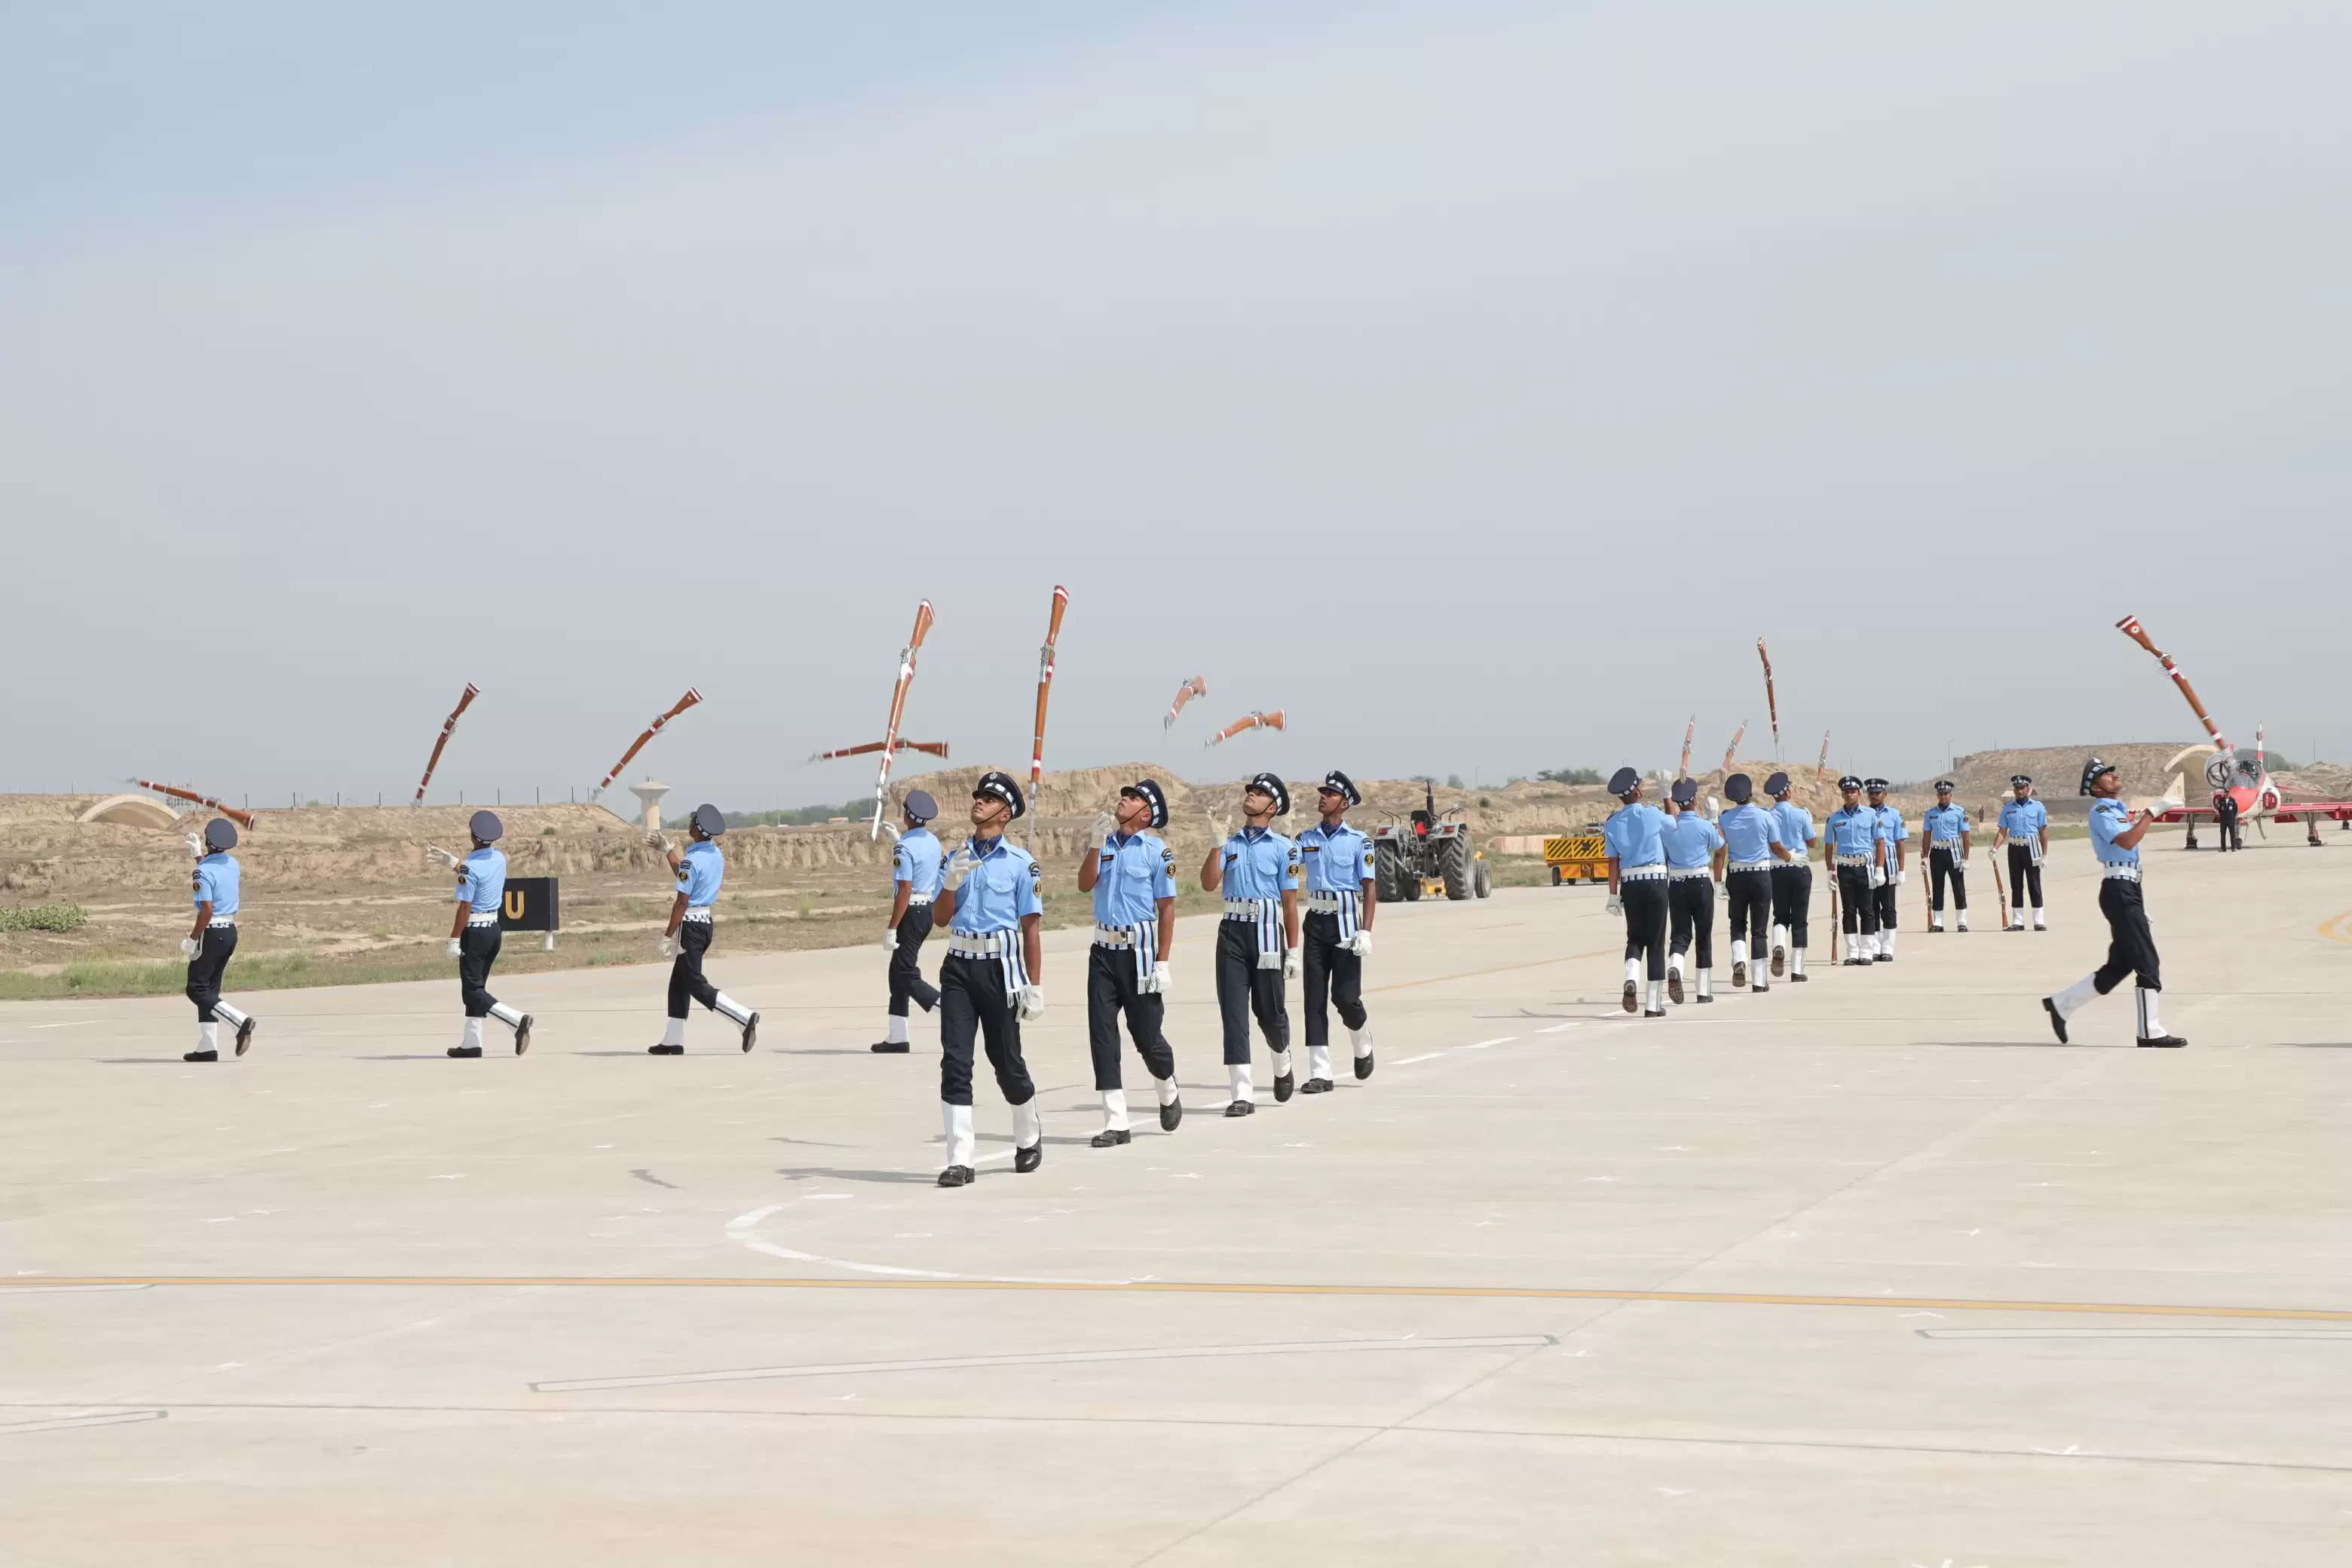 वायुसेना का सूरतगढ़ में एयर डिस्प्ले, जांबाज सूर्यकिरण टीम ने दिखाए हवाई करतब